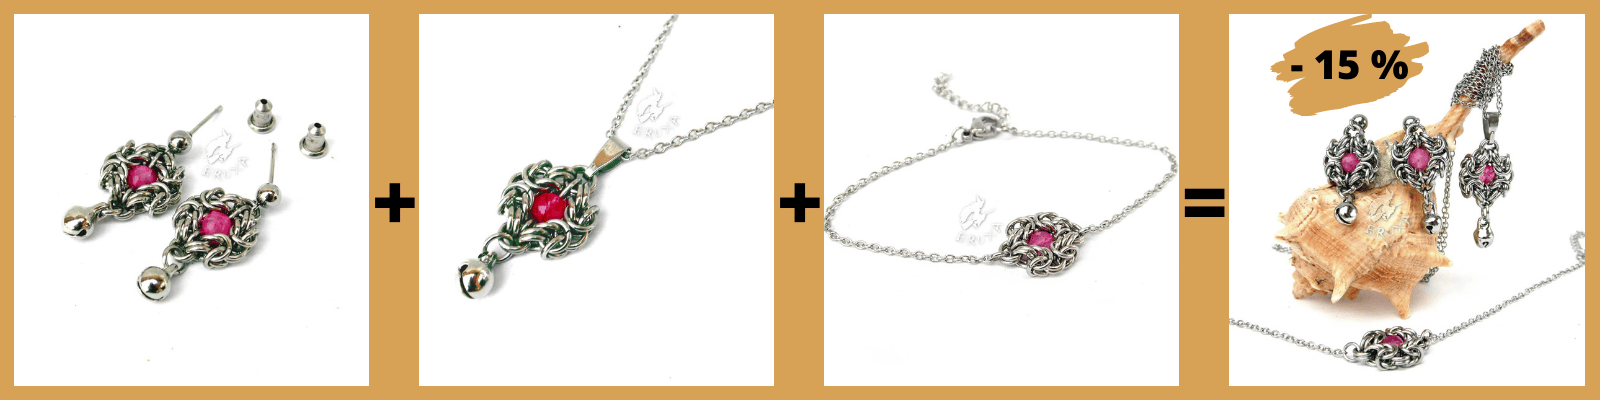 Kolczyki+naszyjnik+bransoletka=zestaw biżuterii Anastazja z truskawkowym kryształem górskim 15% taniej